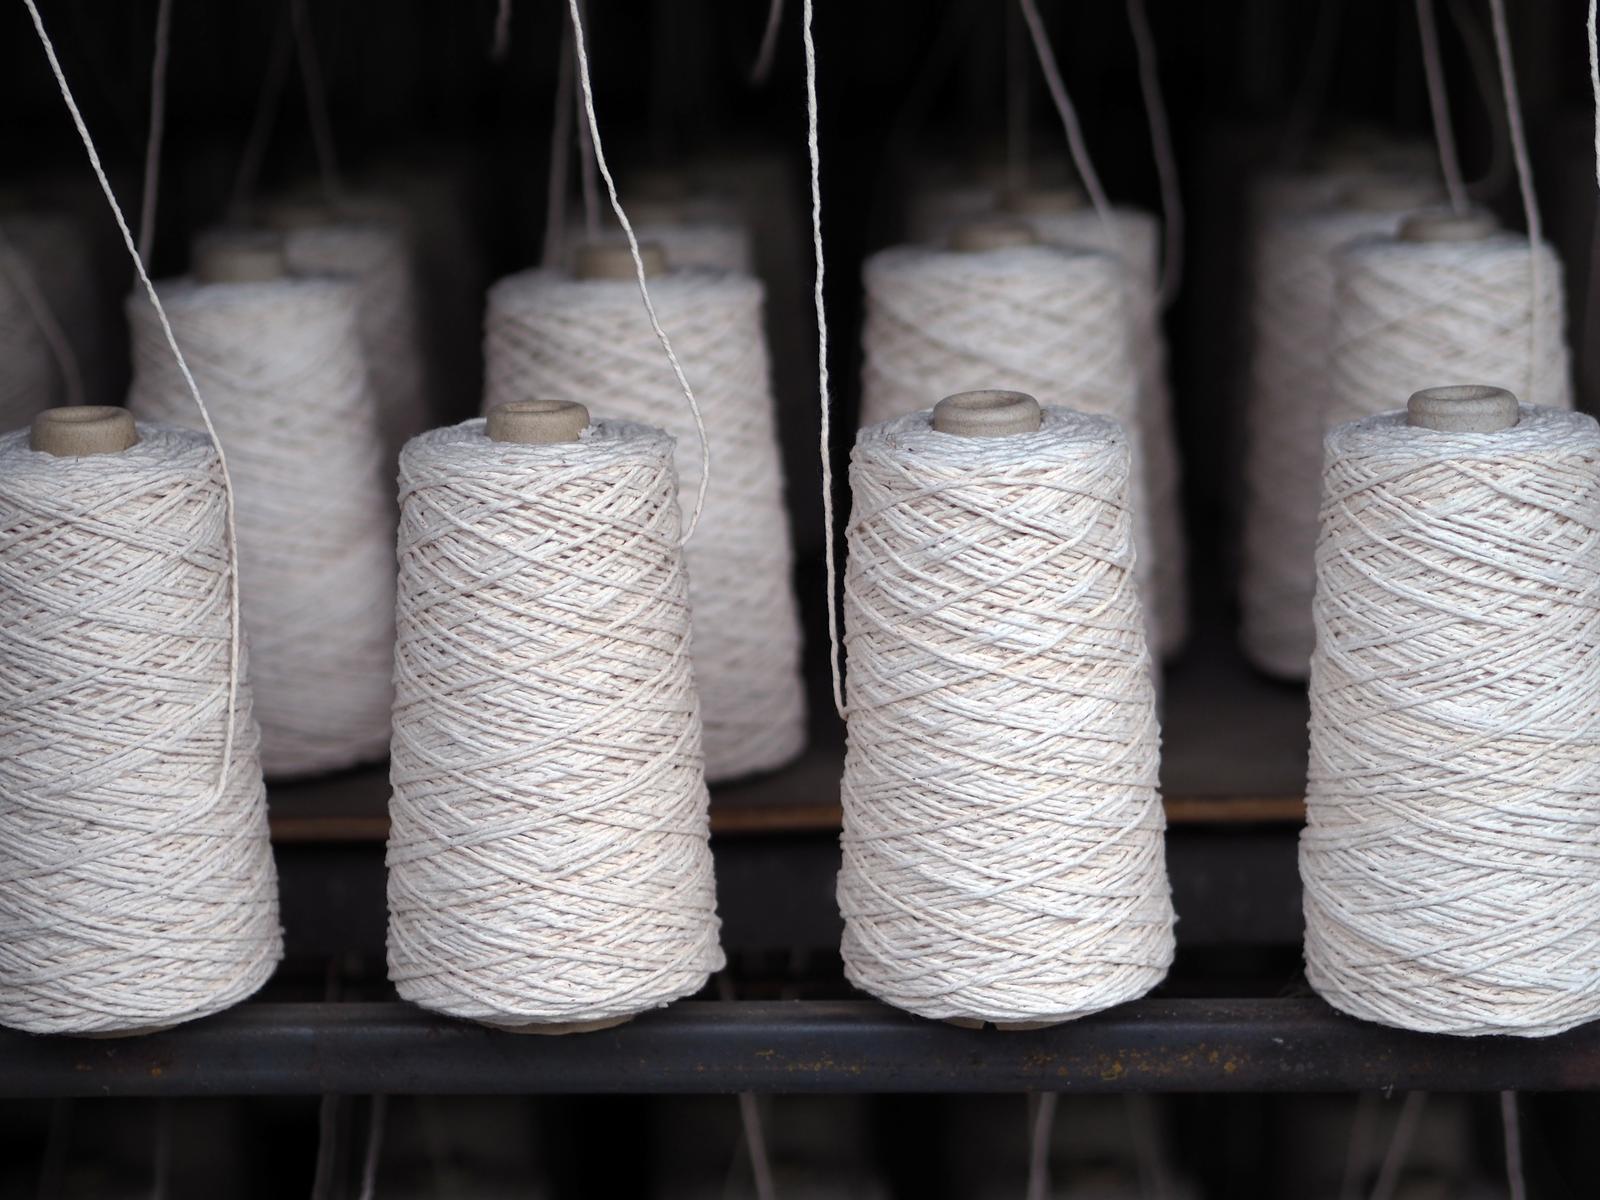 SAMSEBEKUTURJE OÜ - Preparation and spinning of textile fibres in Tallinn